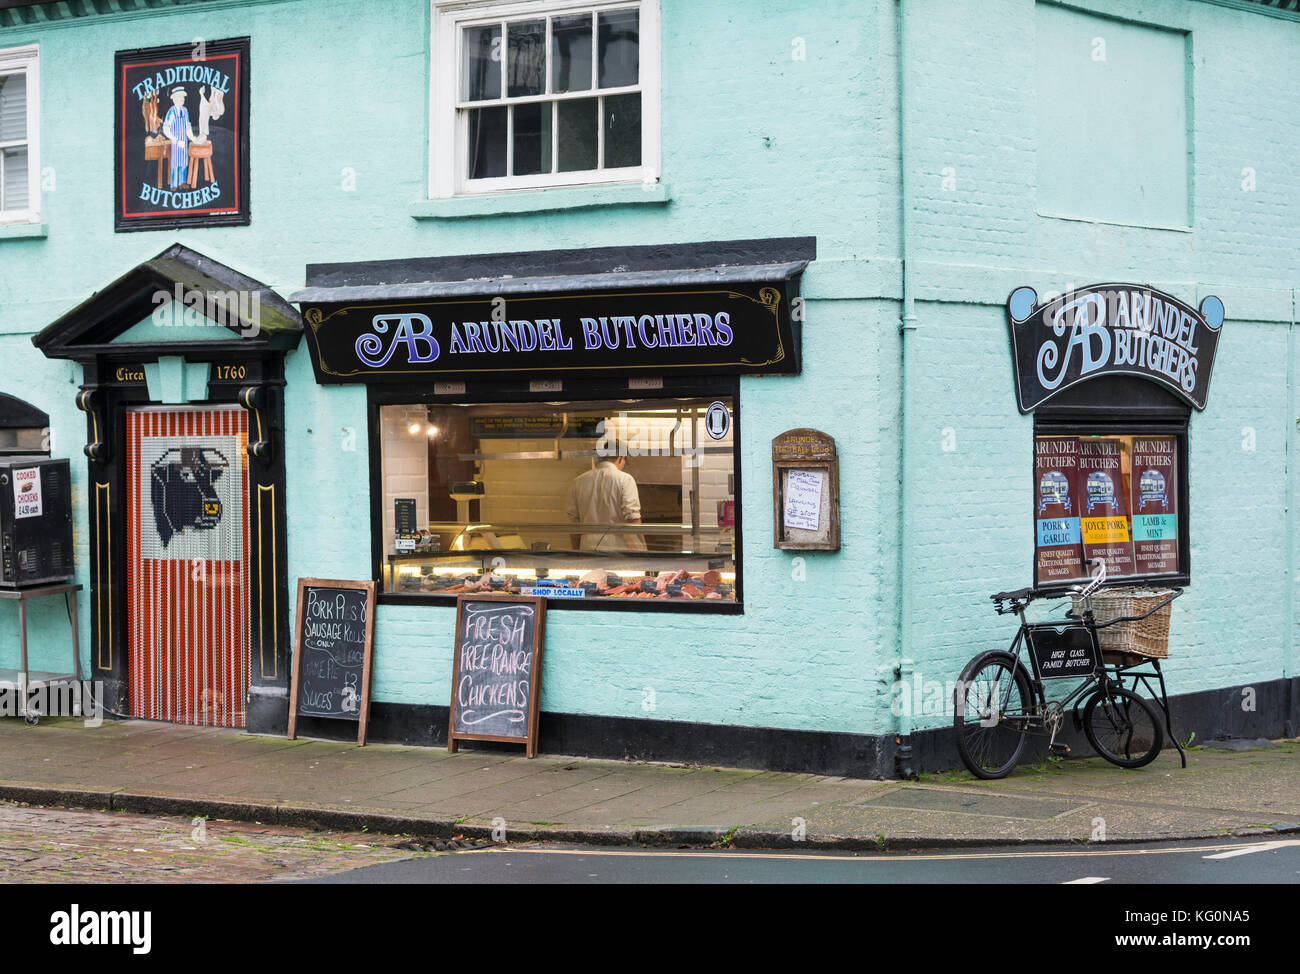 Arundel Butchers, une petite boucherie locale à Arundel, West Sussex, Angleterre, Royaume-Uni. Banque D'Images